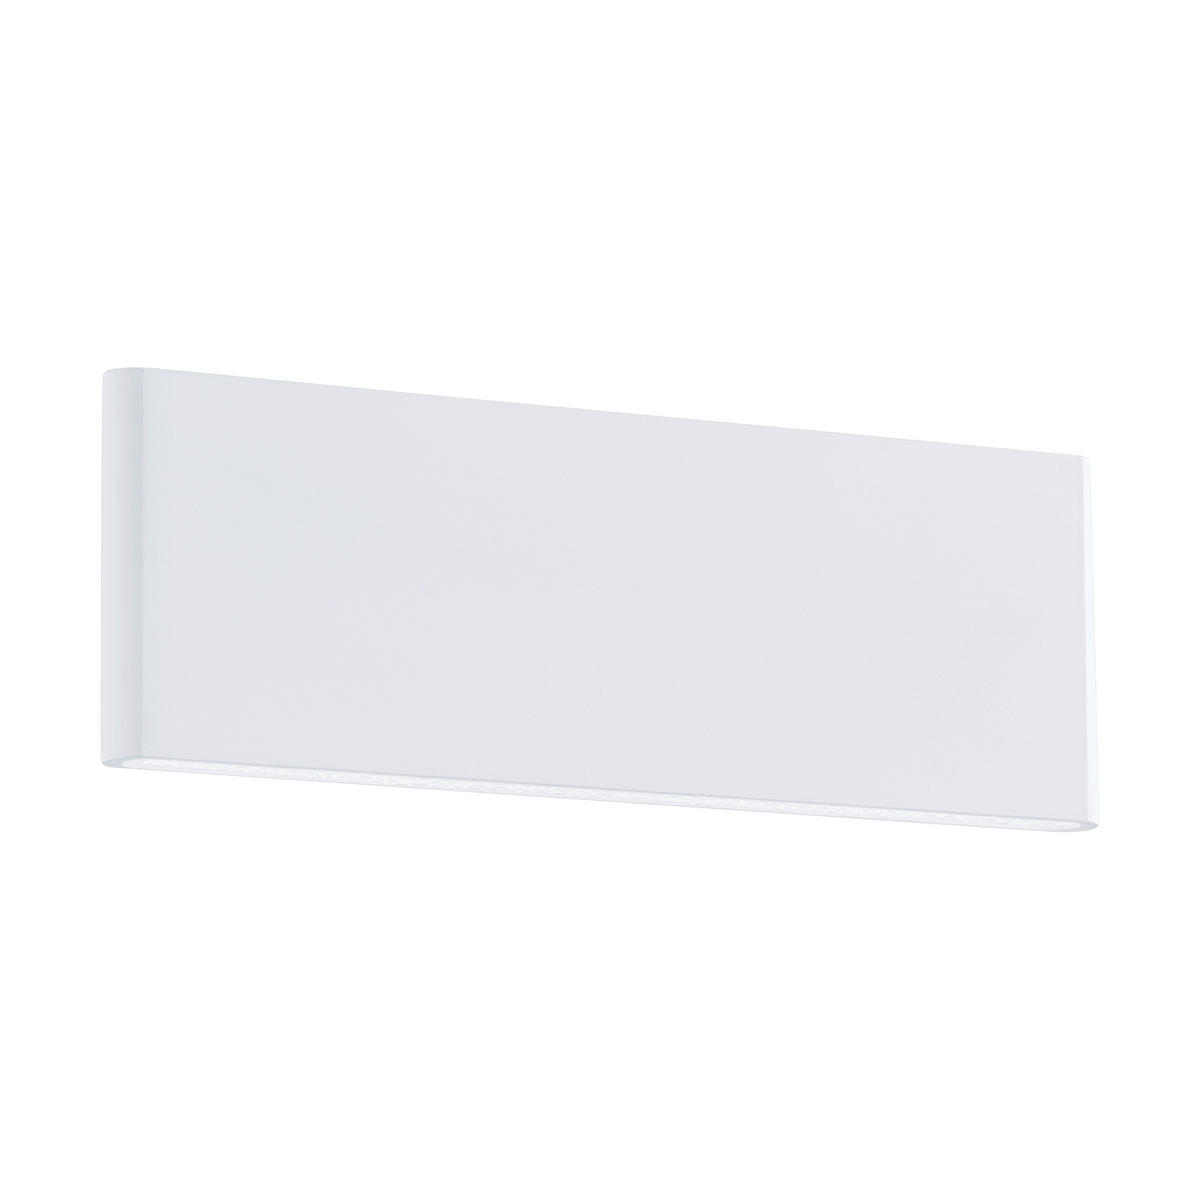 LED-WANDLEUCHTE   - Weiß, KONVENTIONELL, Kunststoff/Metall (8/25,5/4,5cm) - Eglo